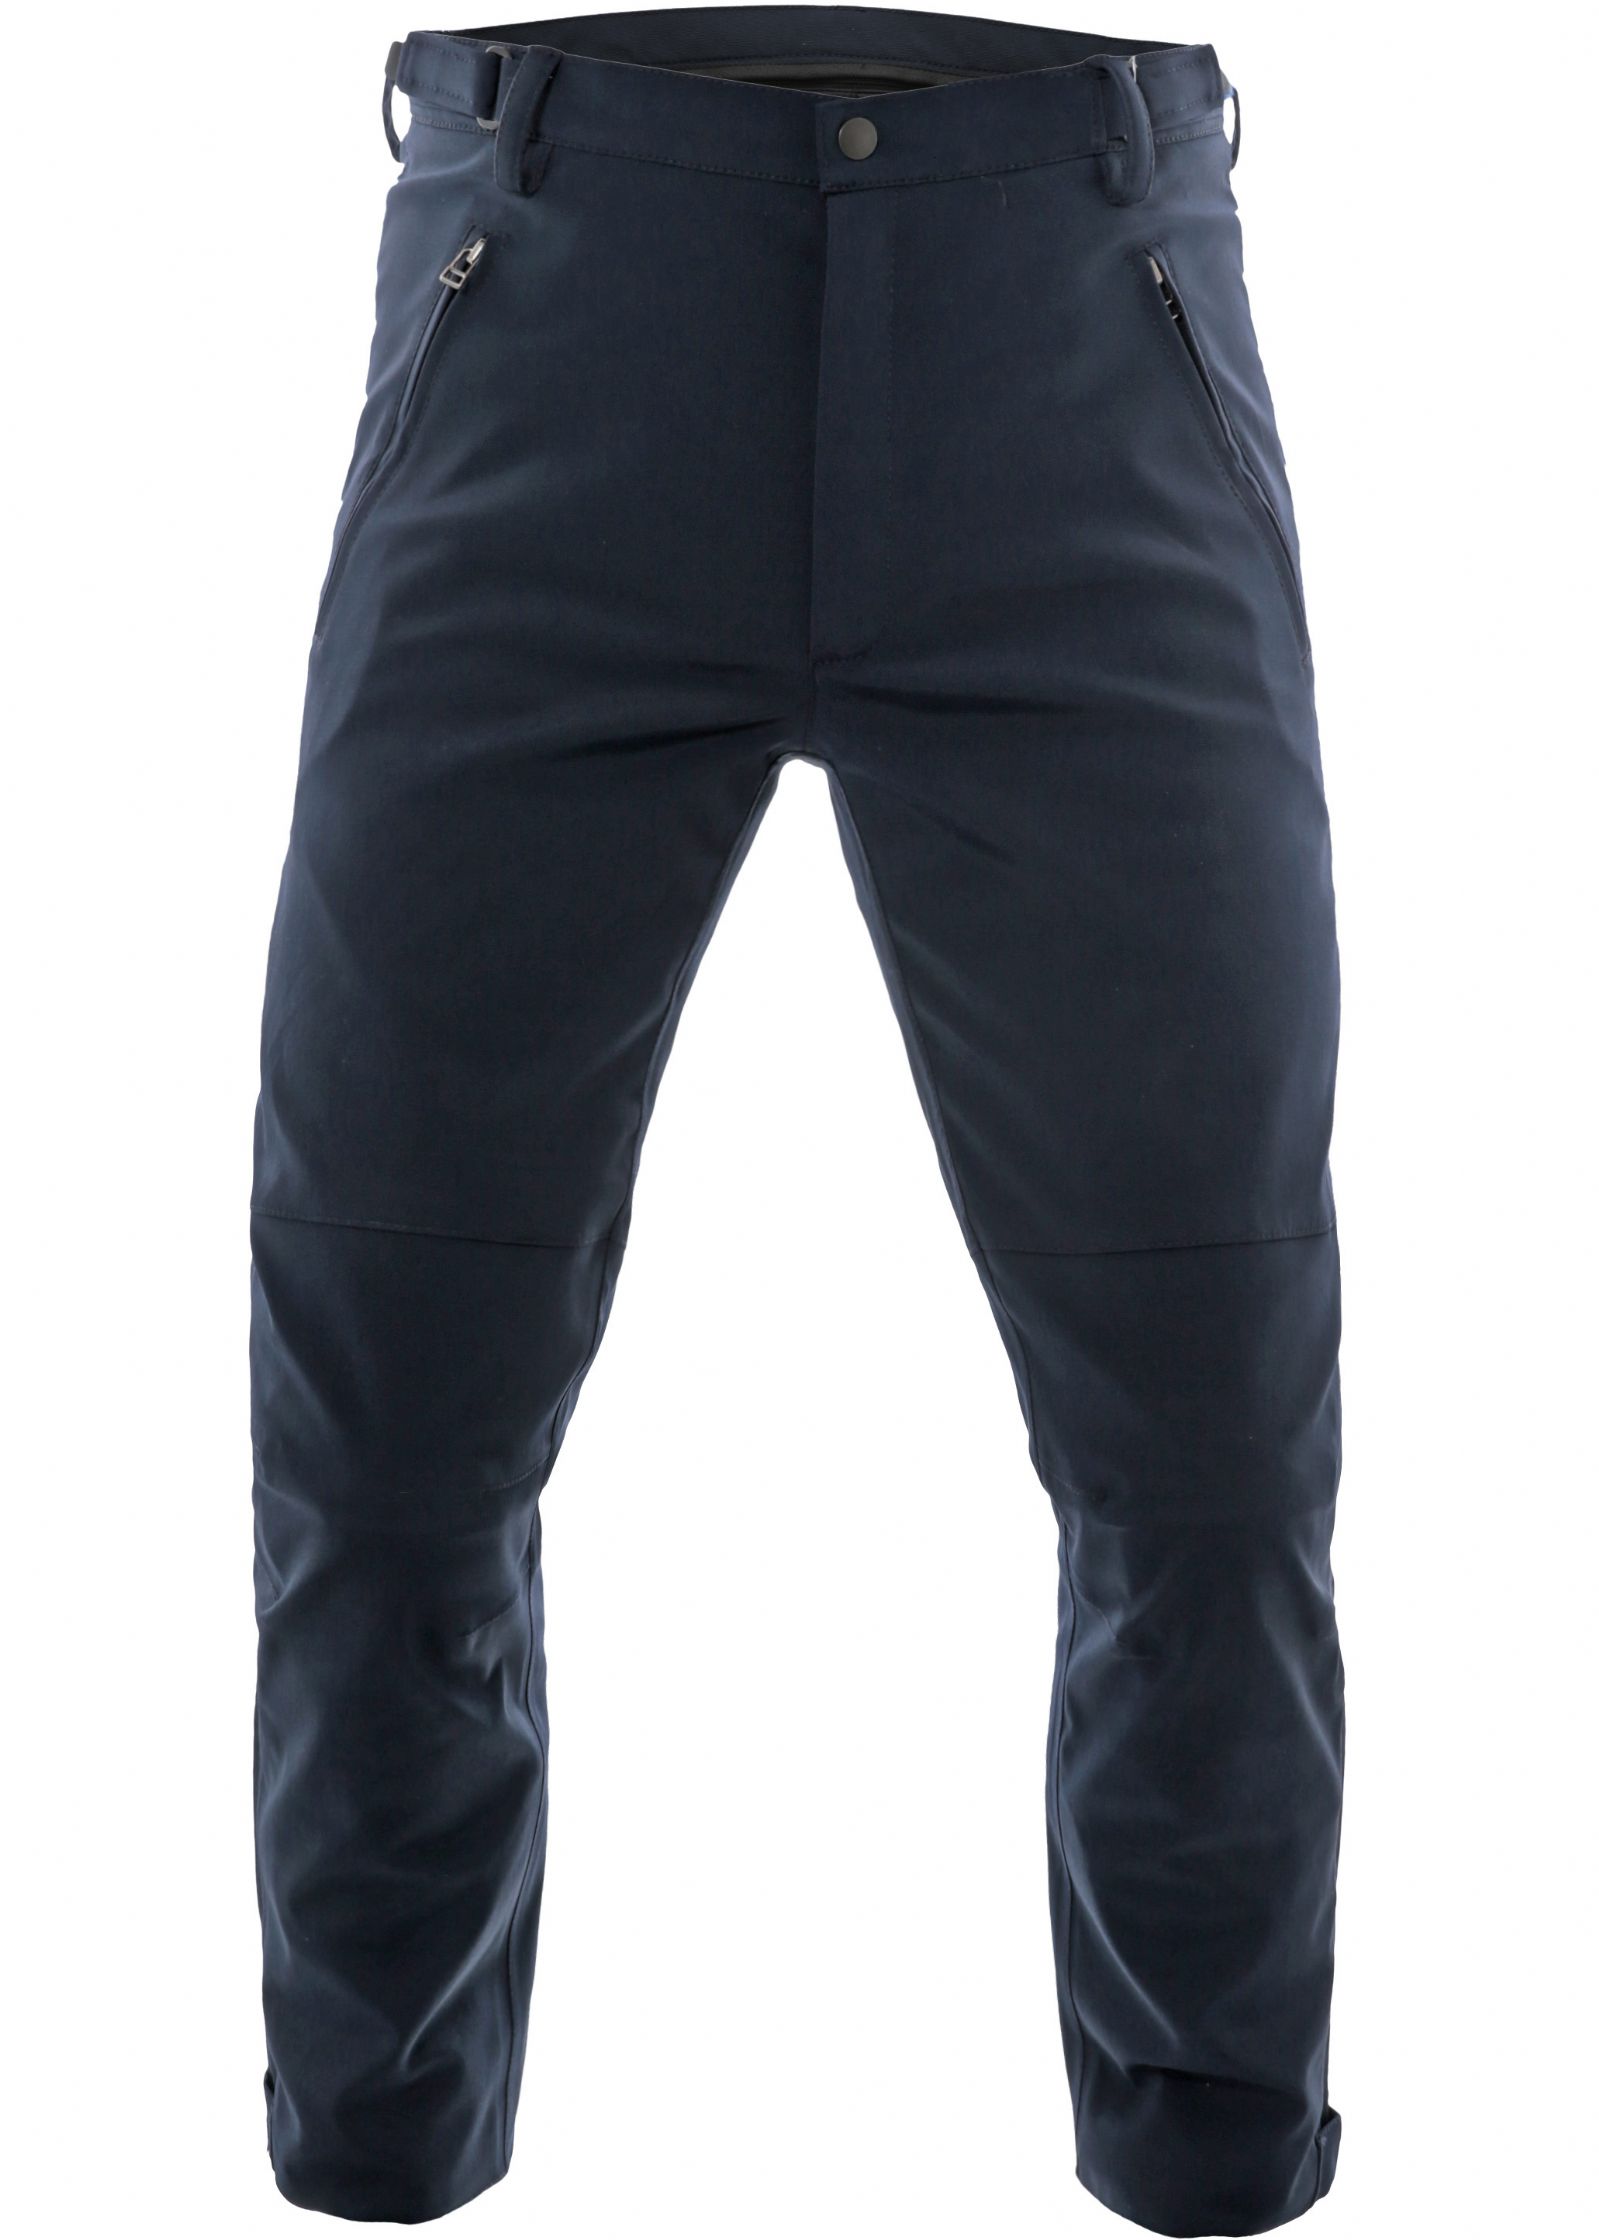 Pantalone Moto Invernale KAAMA-DAINESE completo di protezioni (fianchi, ginocchia-tibia)